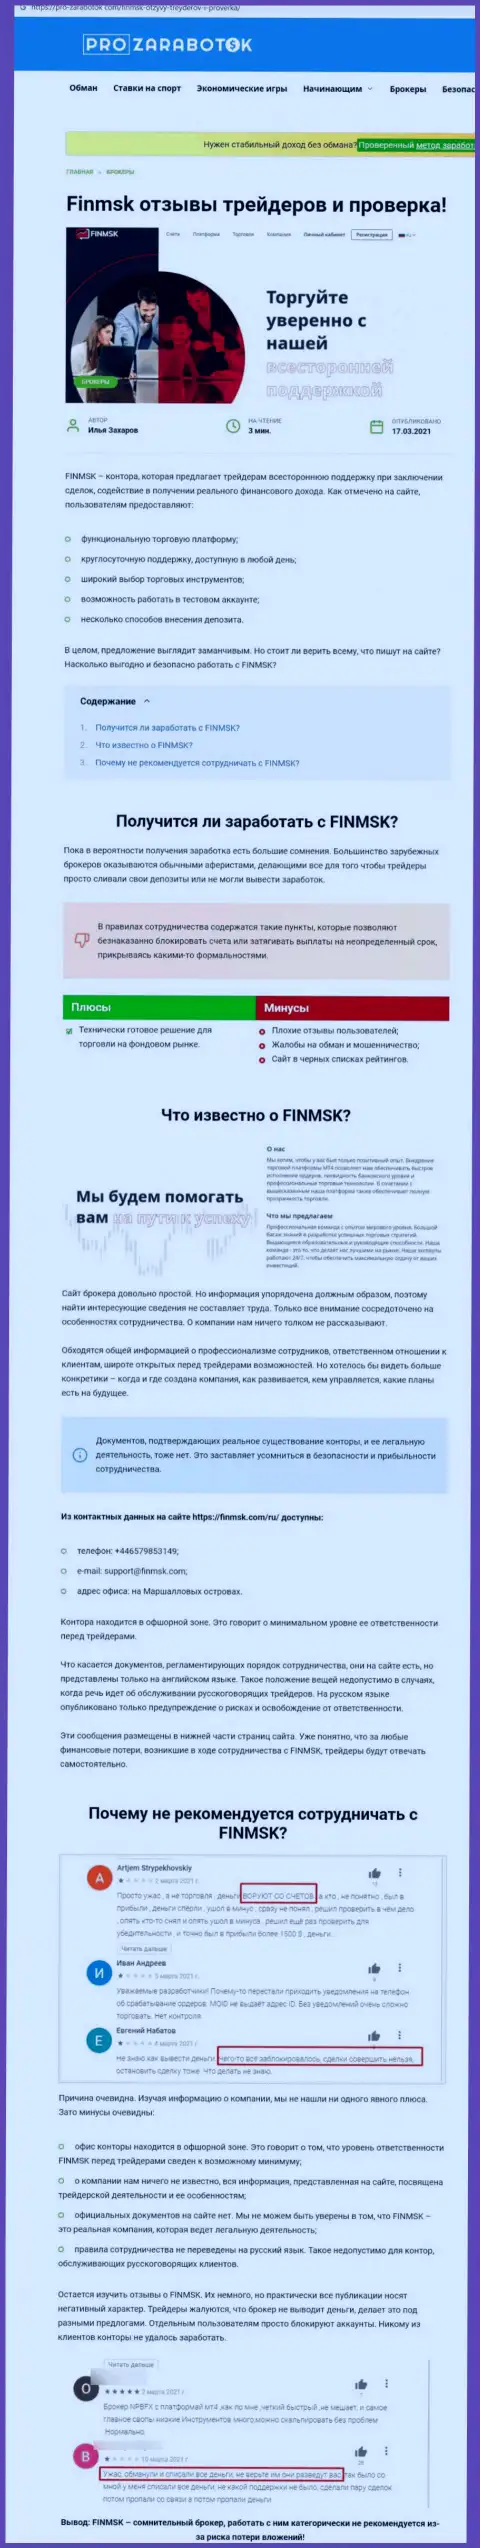 Чем чревато взаимодействие с конторой FinMSK ? Обзорная статья об мошеннике